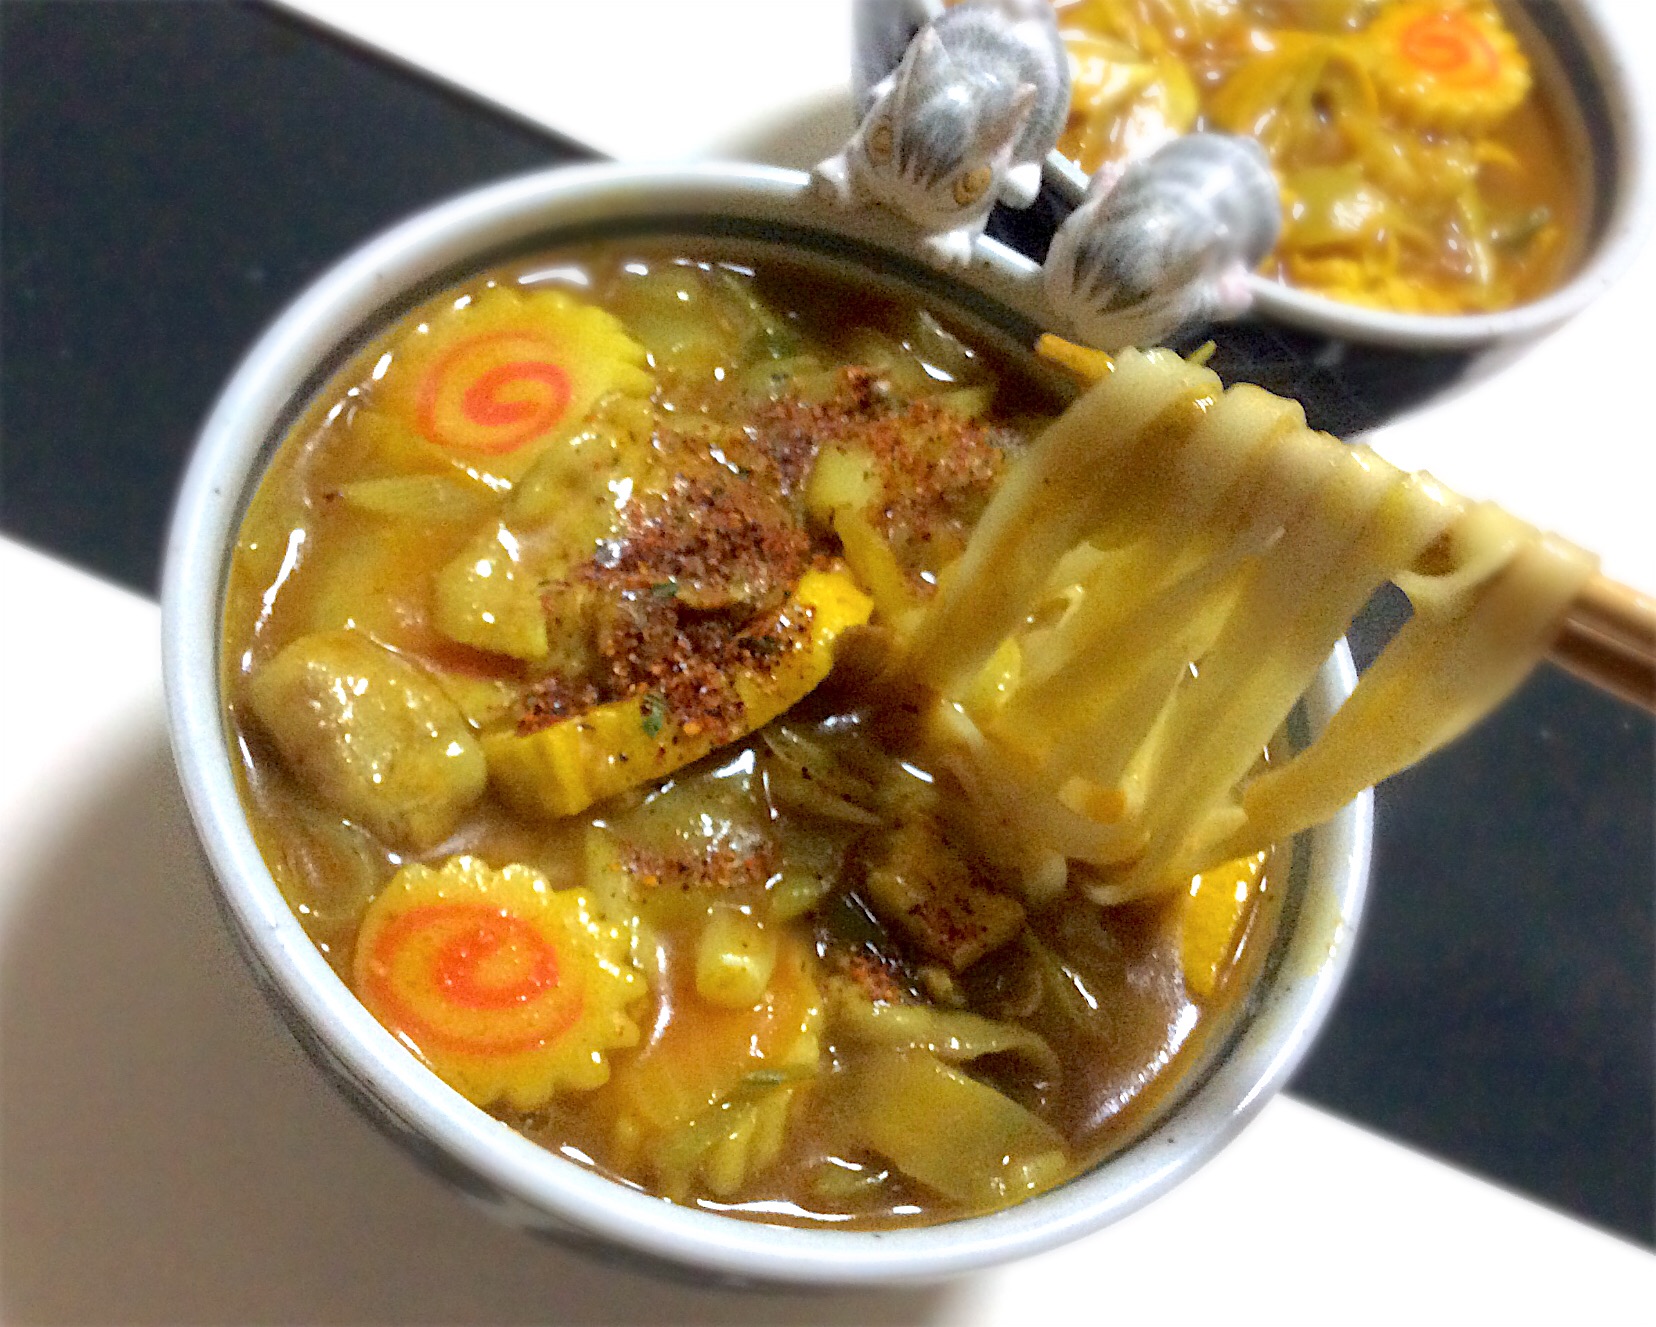 カレーきしめん
麺つゆは鰹、昆布、鯛で出汁を。
カレー粉は上野アメ横大津屋のオリジナルで